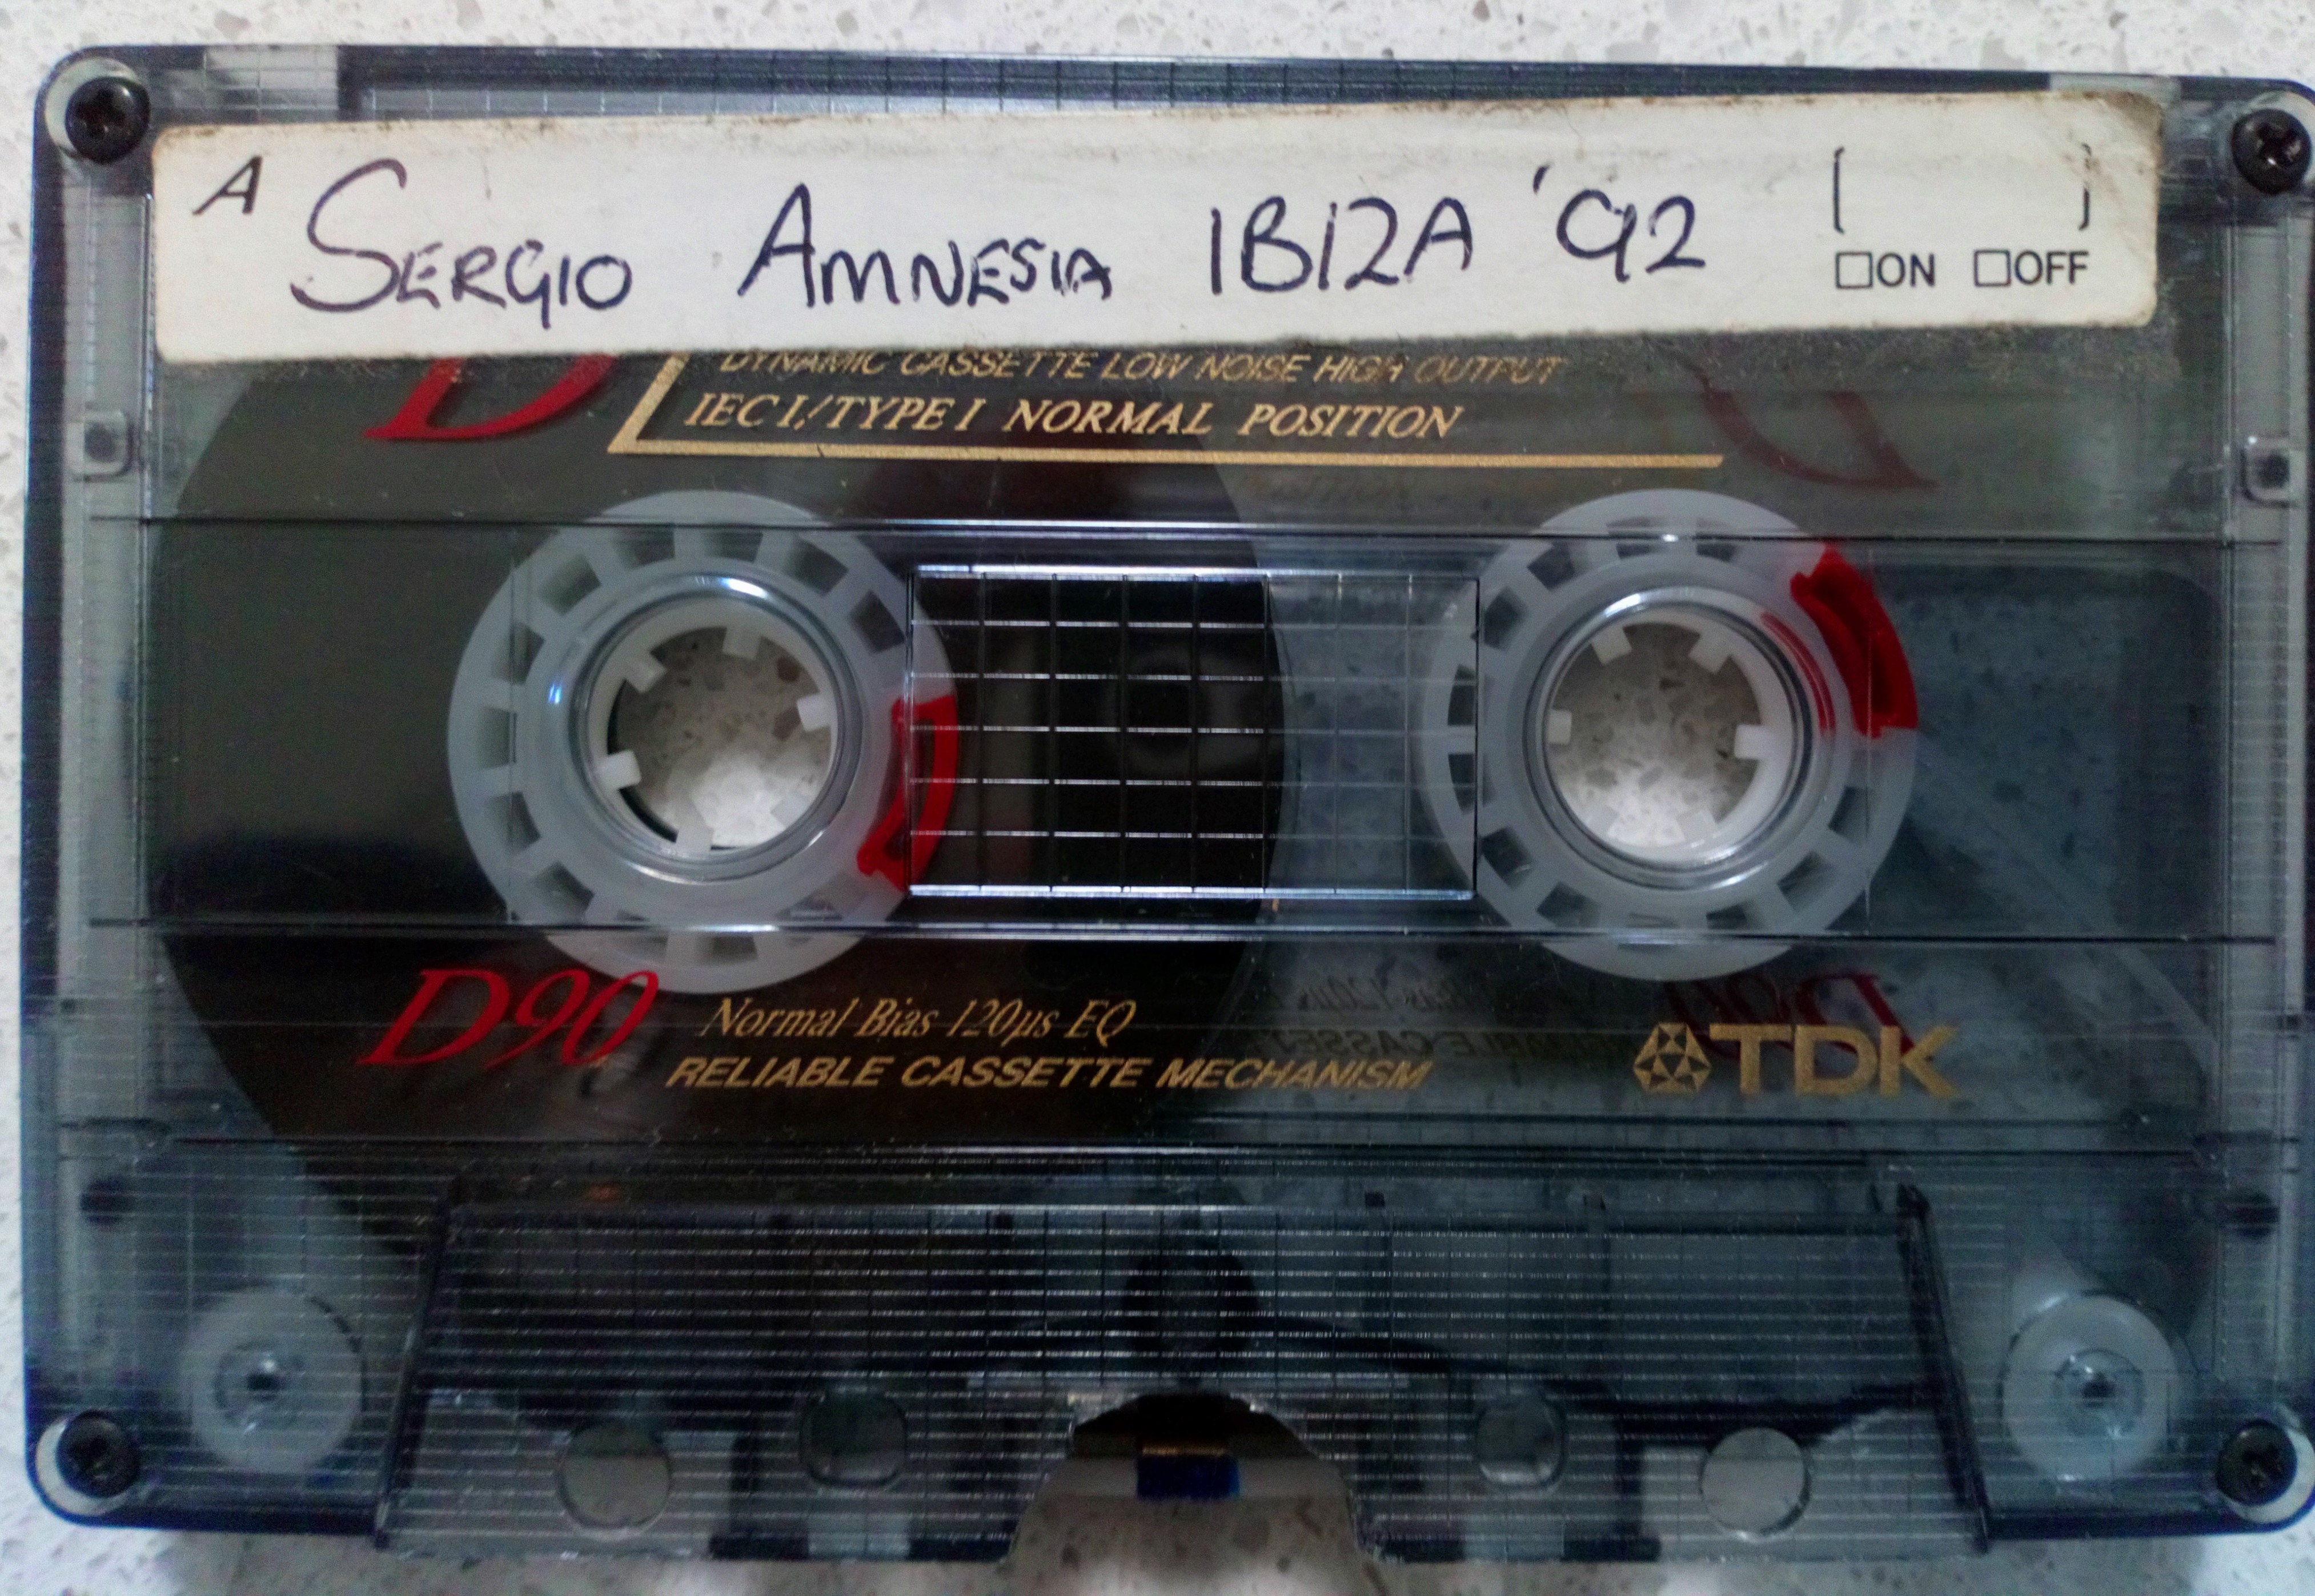 Amnesia-Ibiza-video-cassette